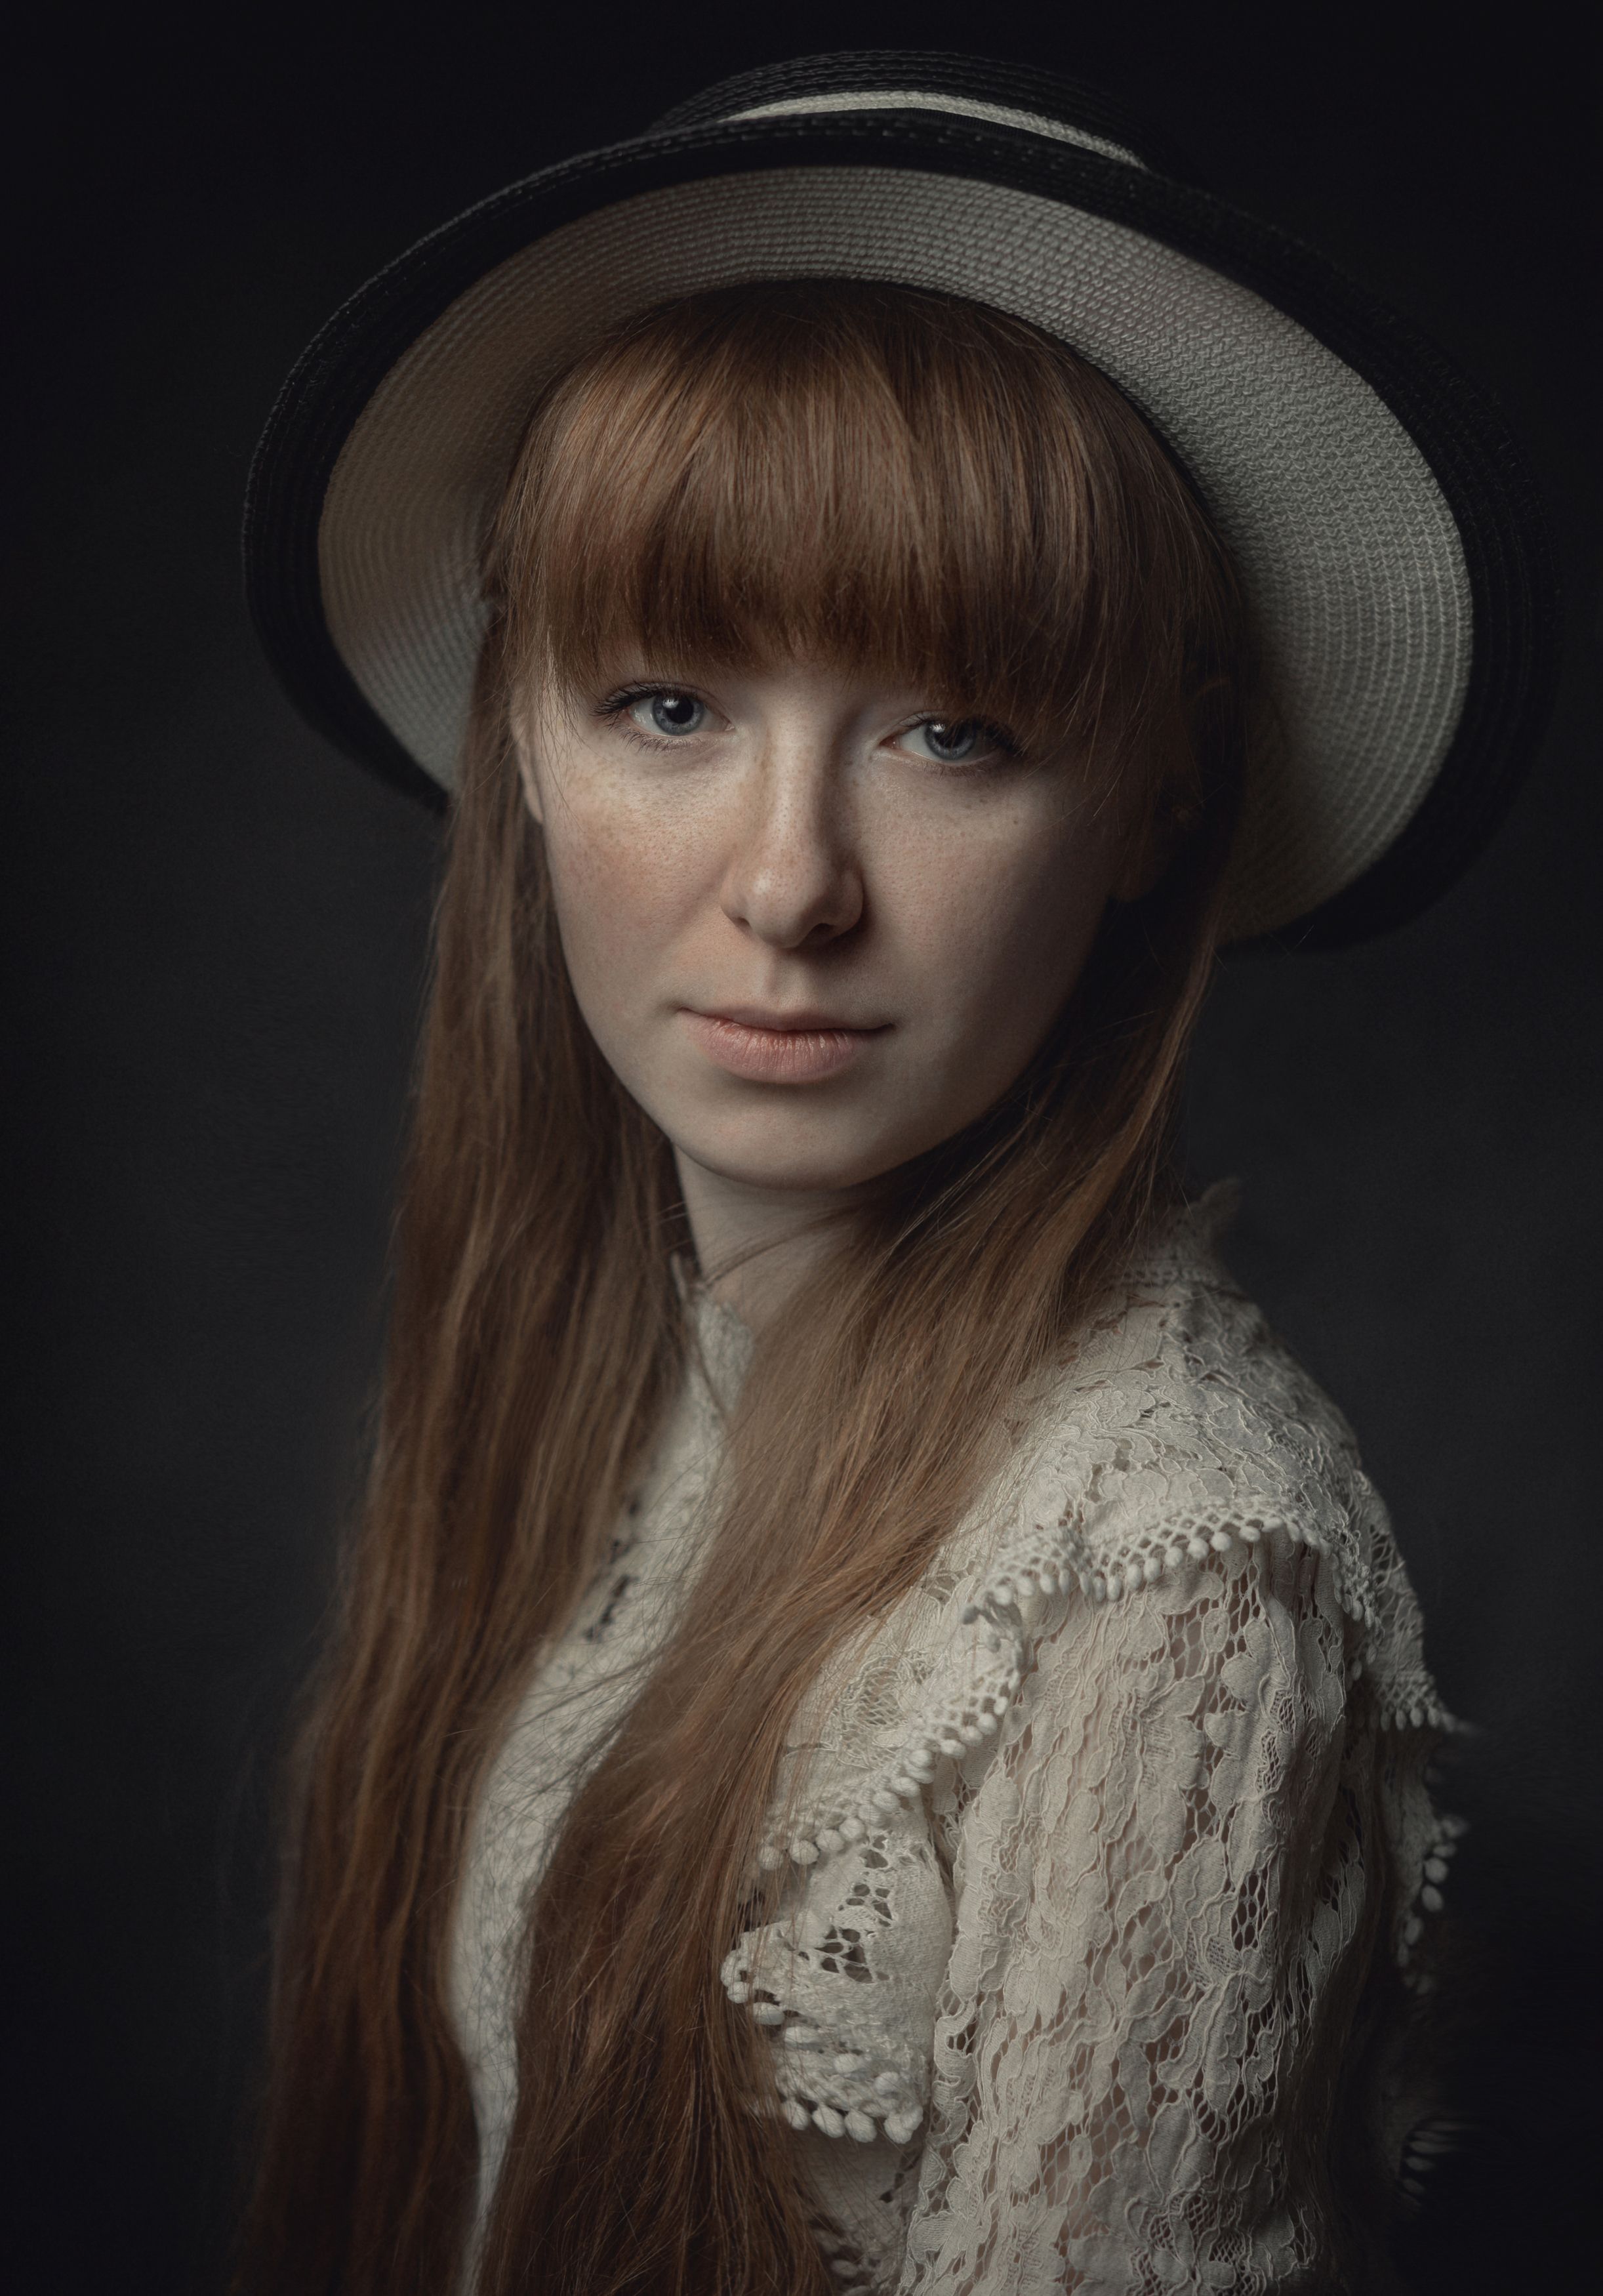 портрет, девушка, веснушки, шляпа, взгляд, portrait, sight, freckles, girl portrait, hat, Aleksey Sologubov